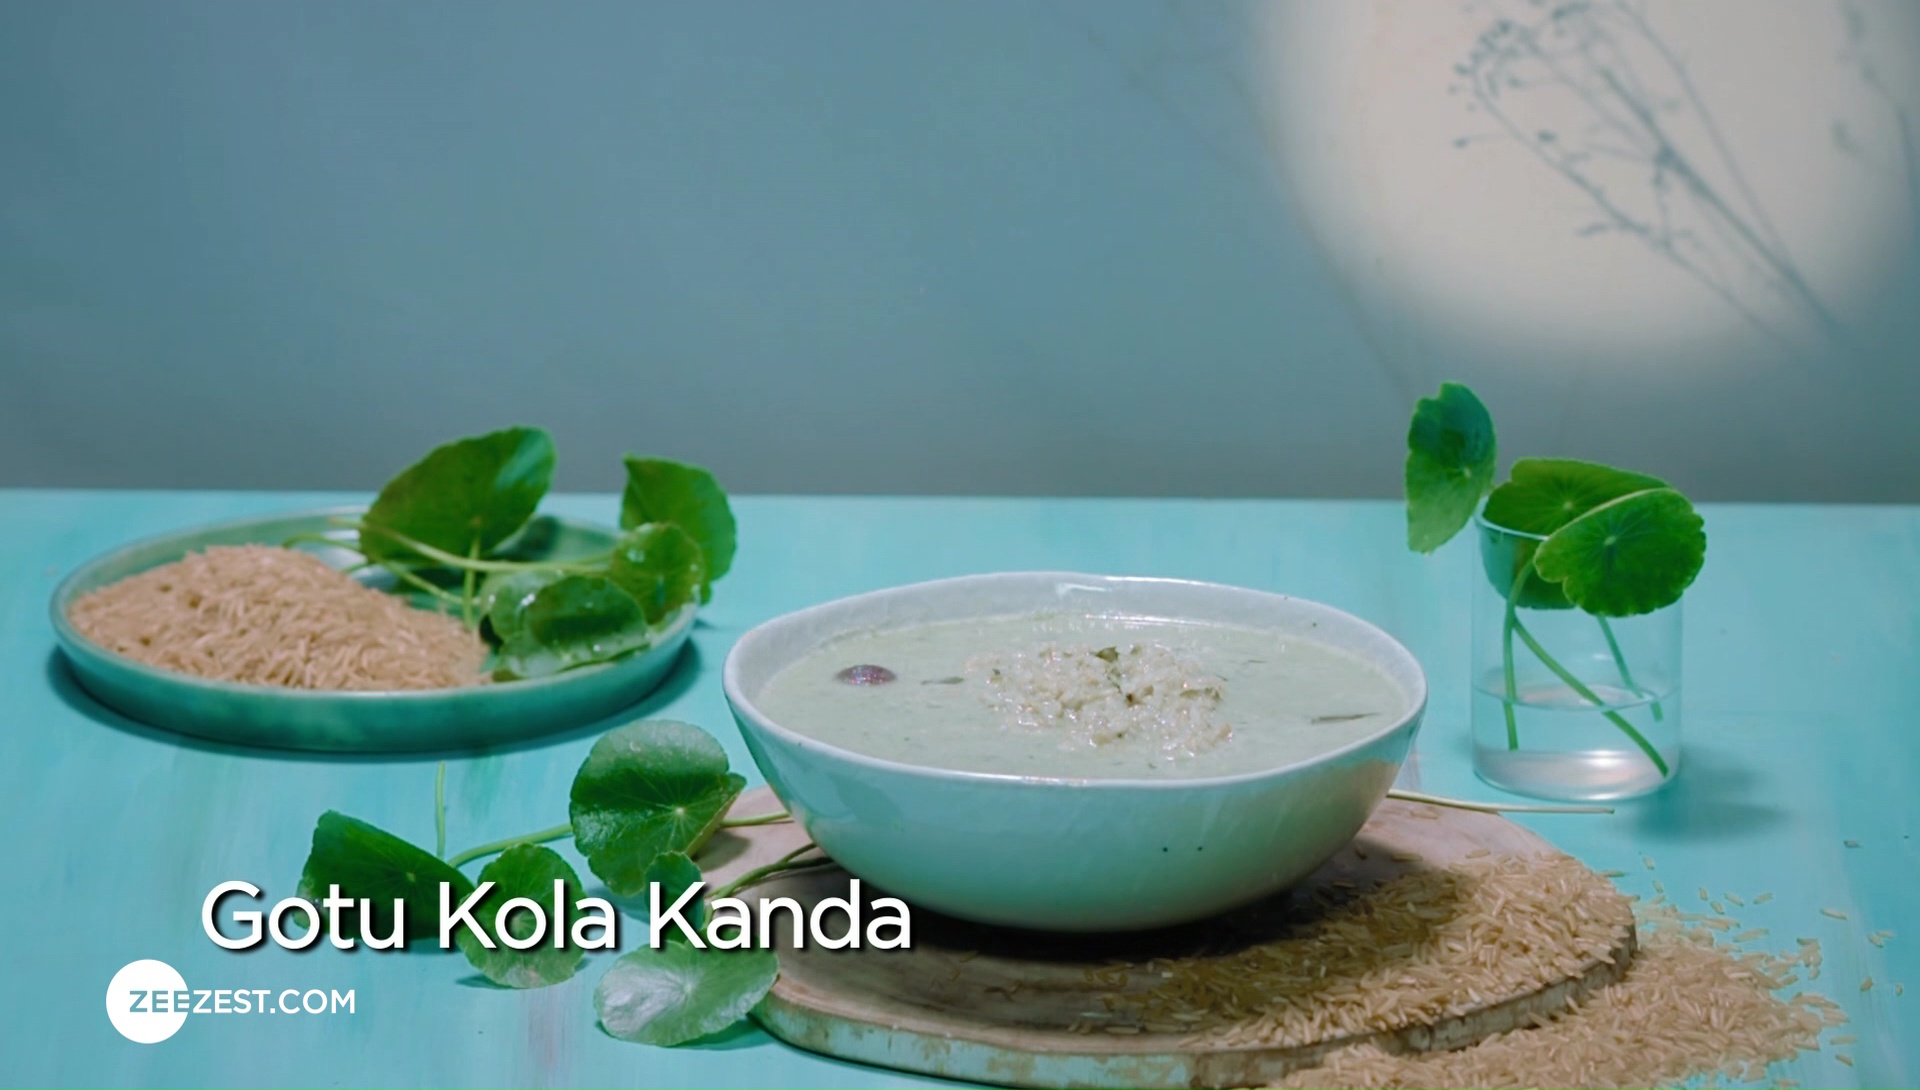 Food Veda, Kunal Kapur